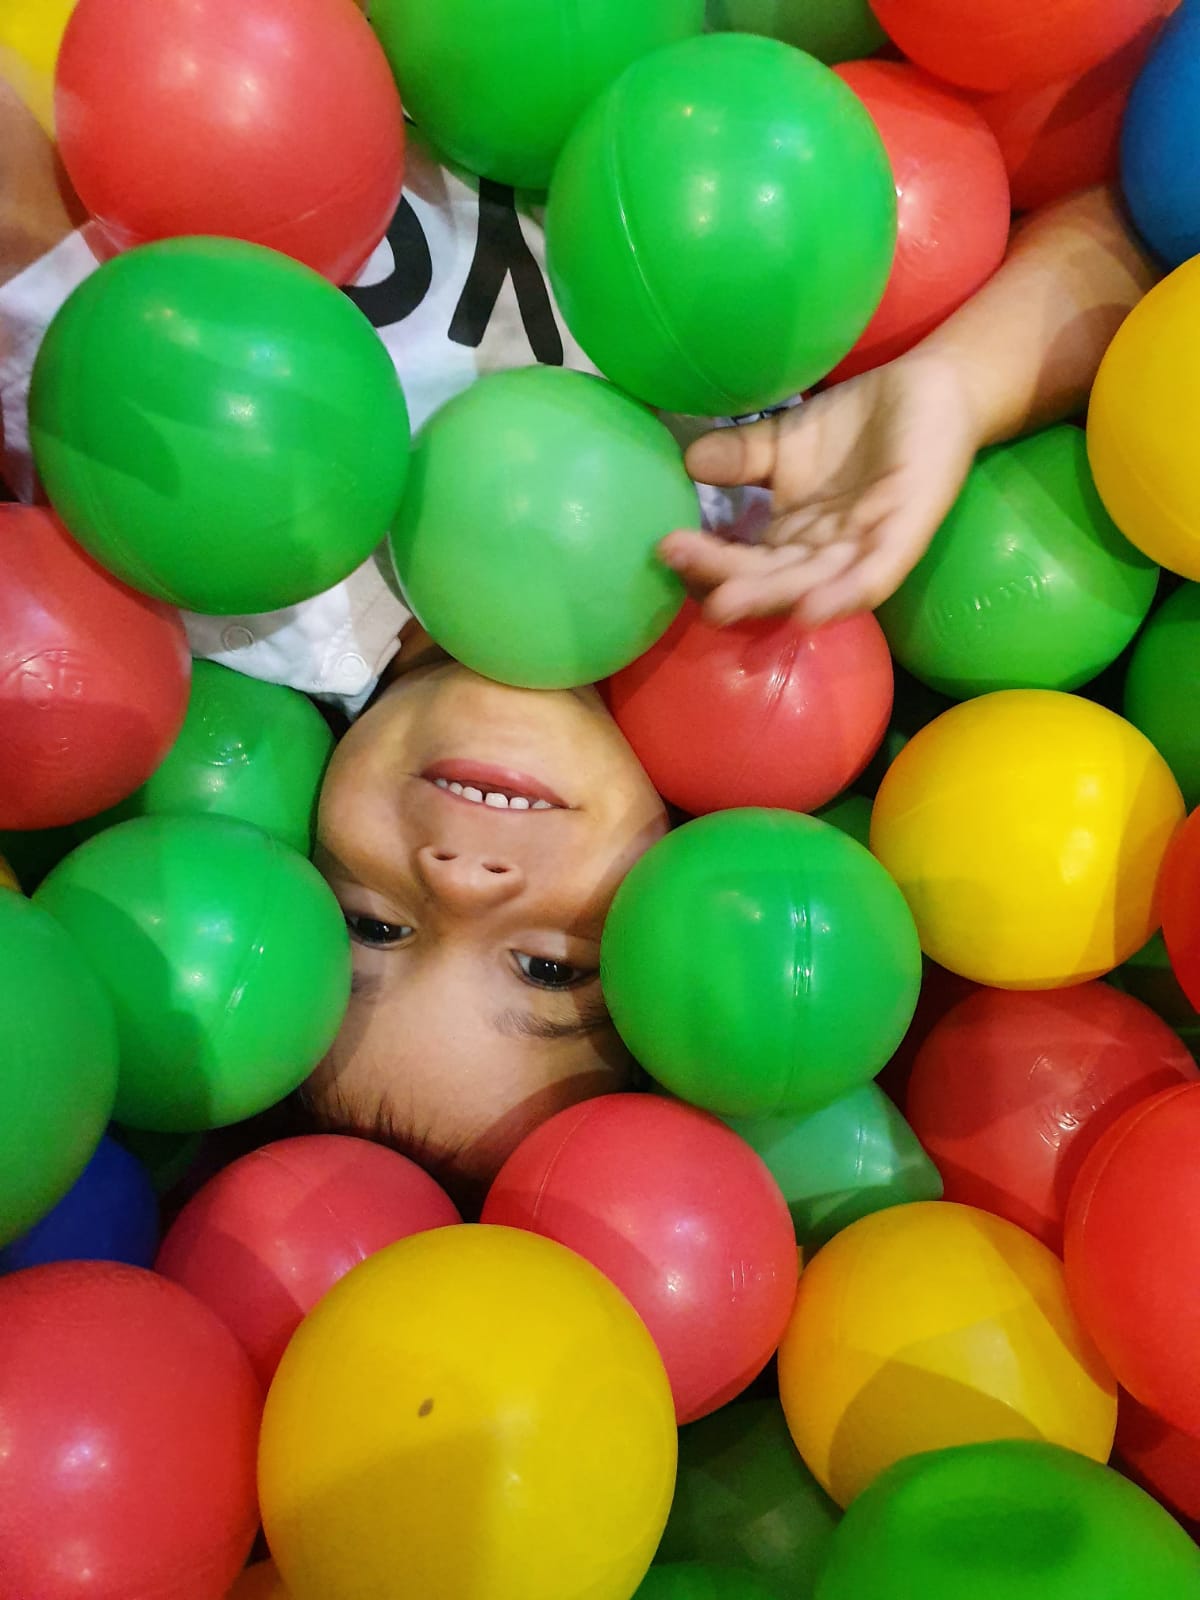 צילום ילד בתוך בריכת כדורים בג/ימבורי - צלמת רוני ישראל